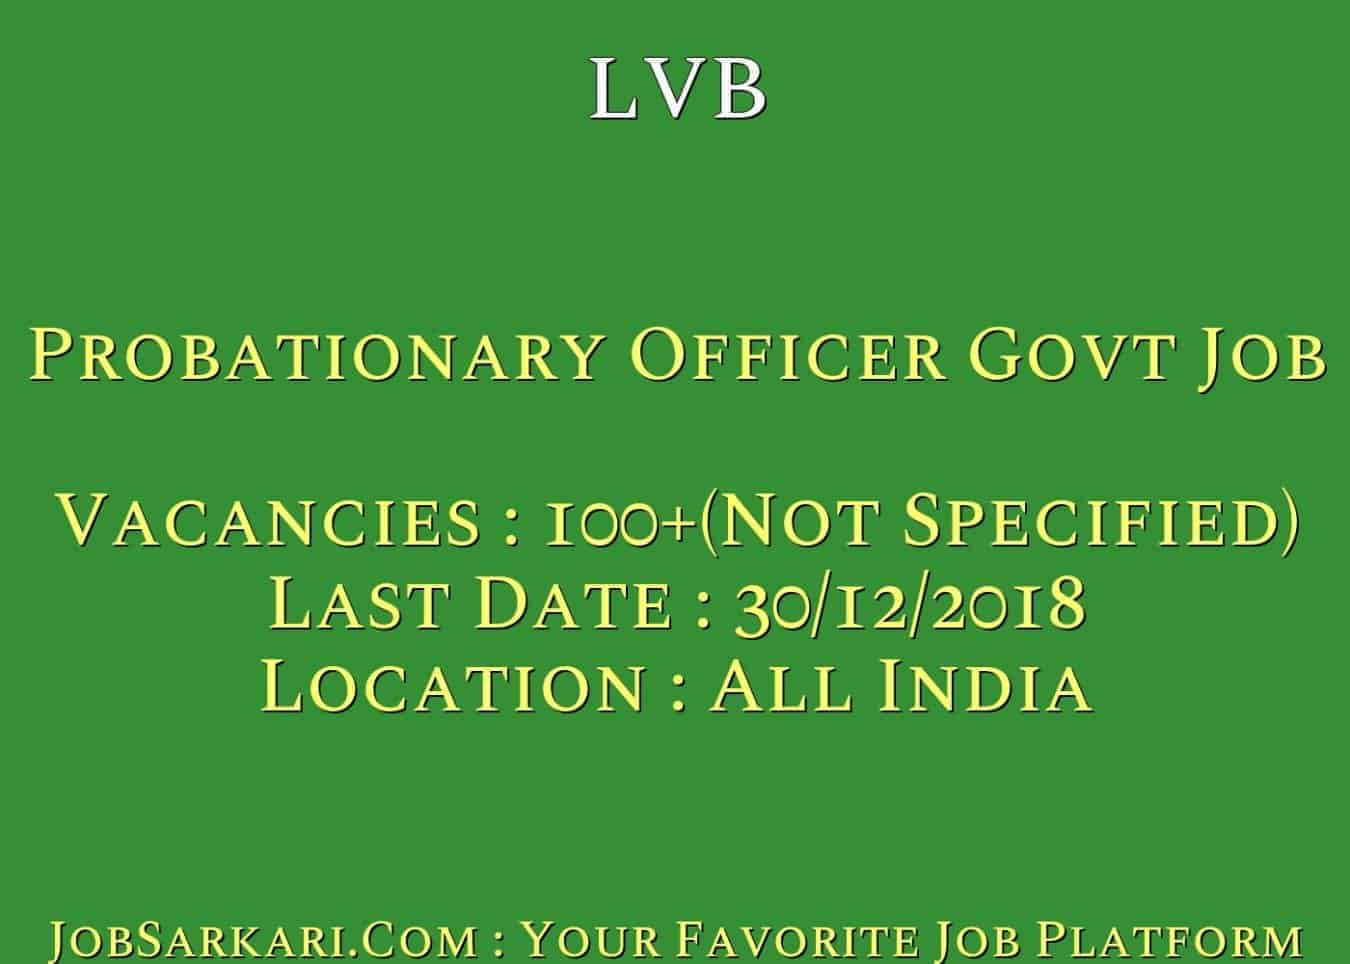 LVB Recruitment 2018 for Probationary Officer Govt Job